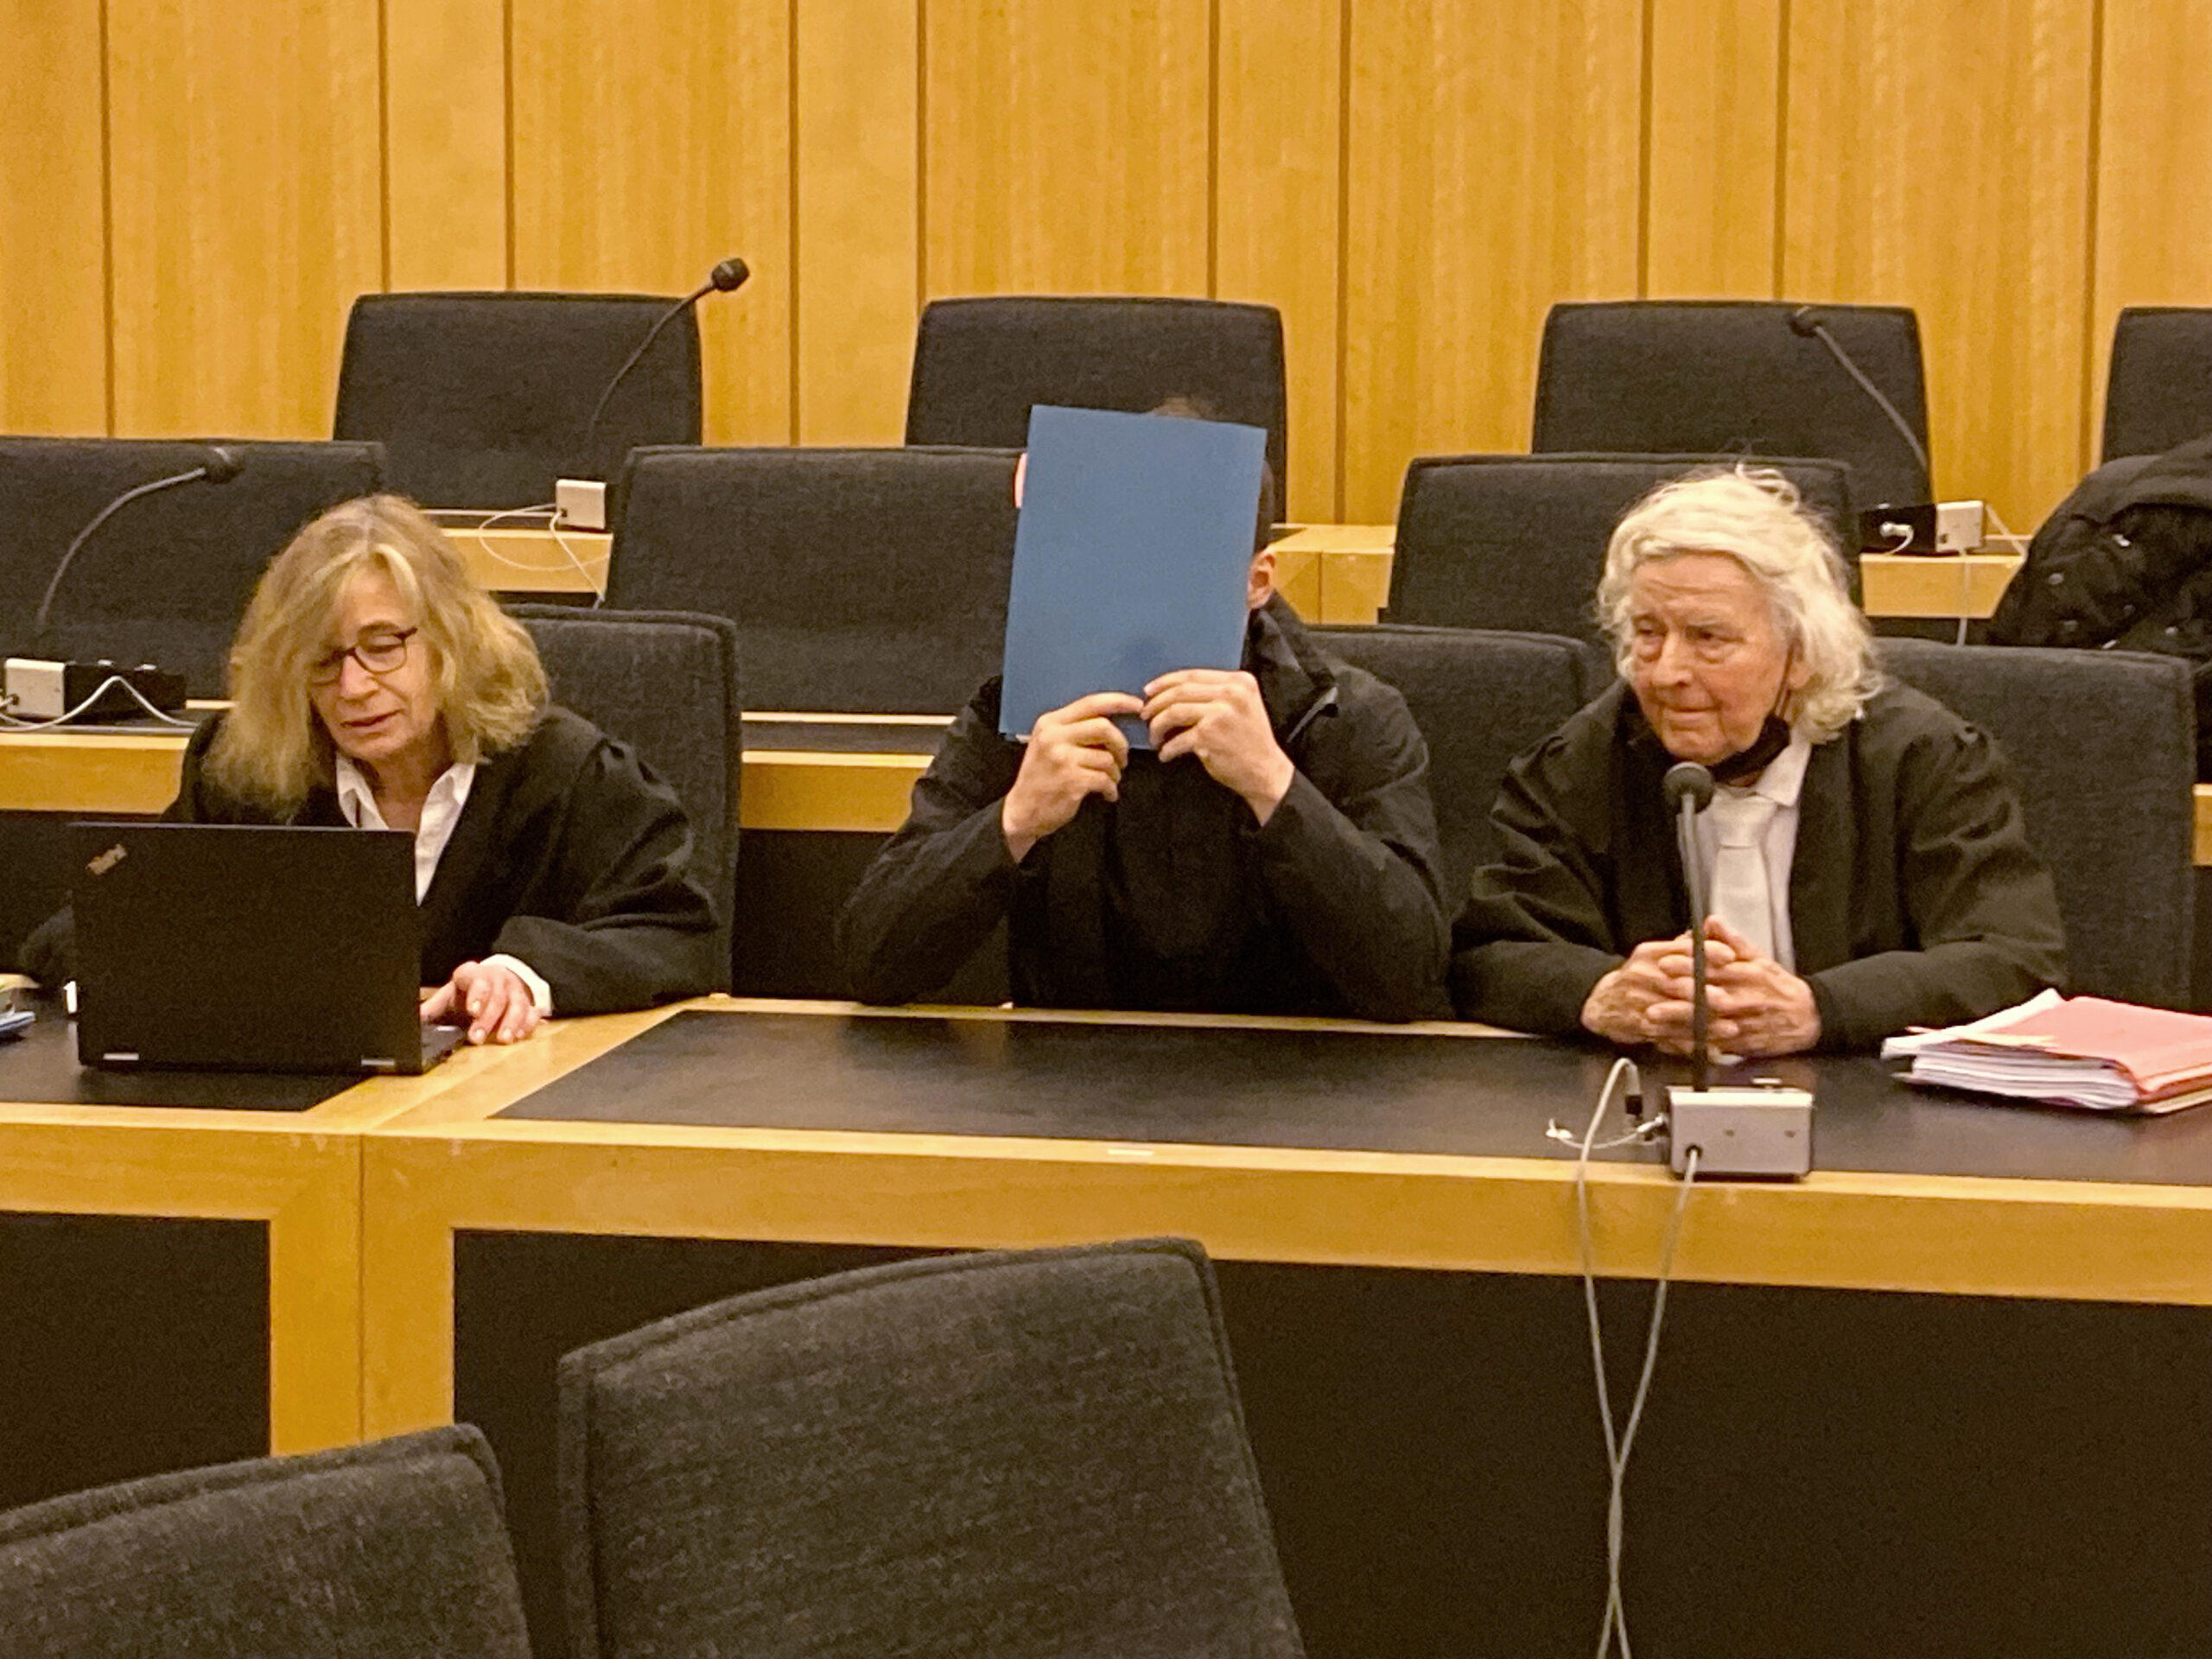 Der 20 Jahre alte Angeklagte sitzt zwischen seiner Pflichtverteidigerin Ulrike Baumann (l.) und dem Anwalt Siegmund Benecken (r.) im Gerichtssaal.